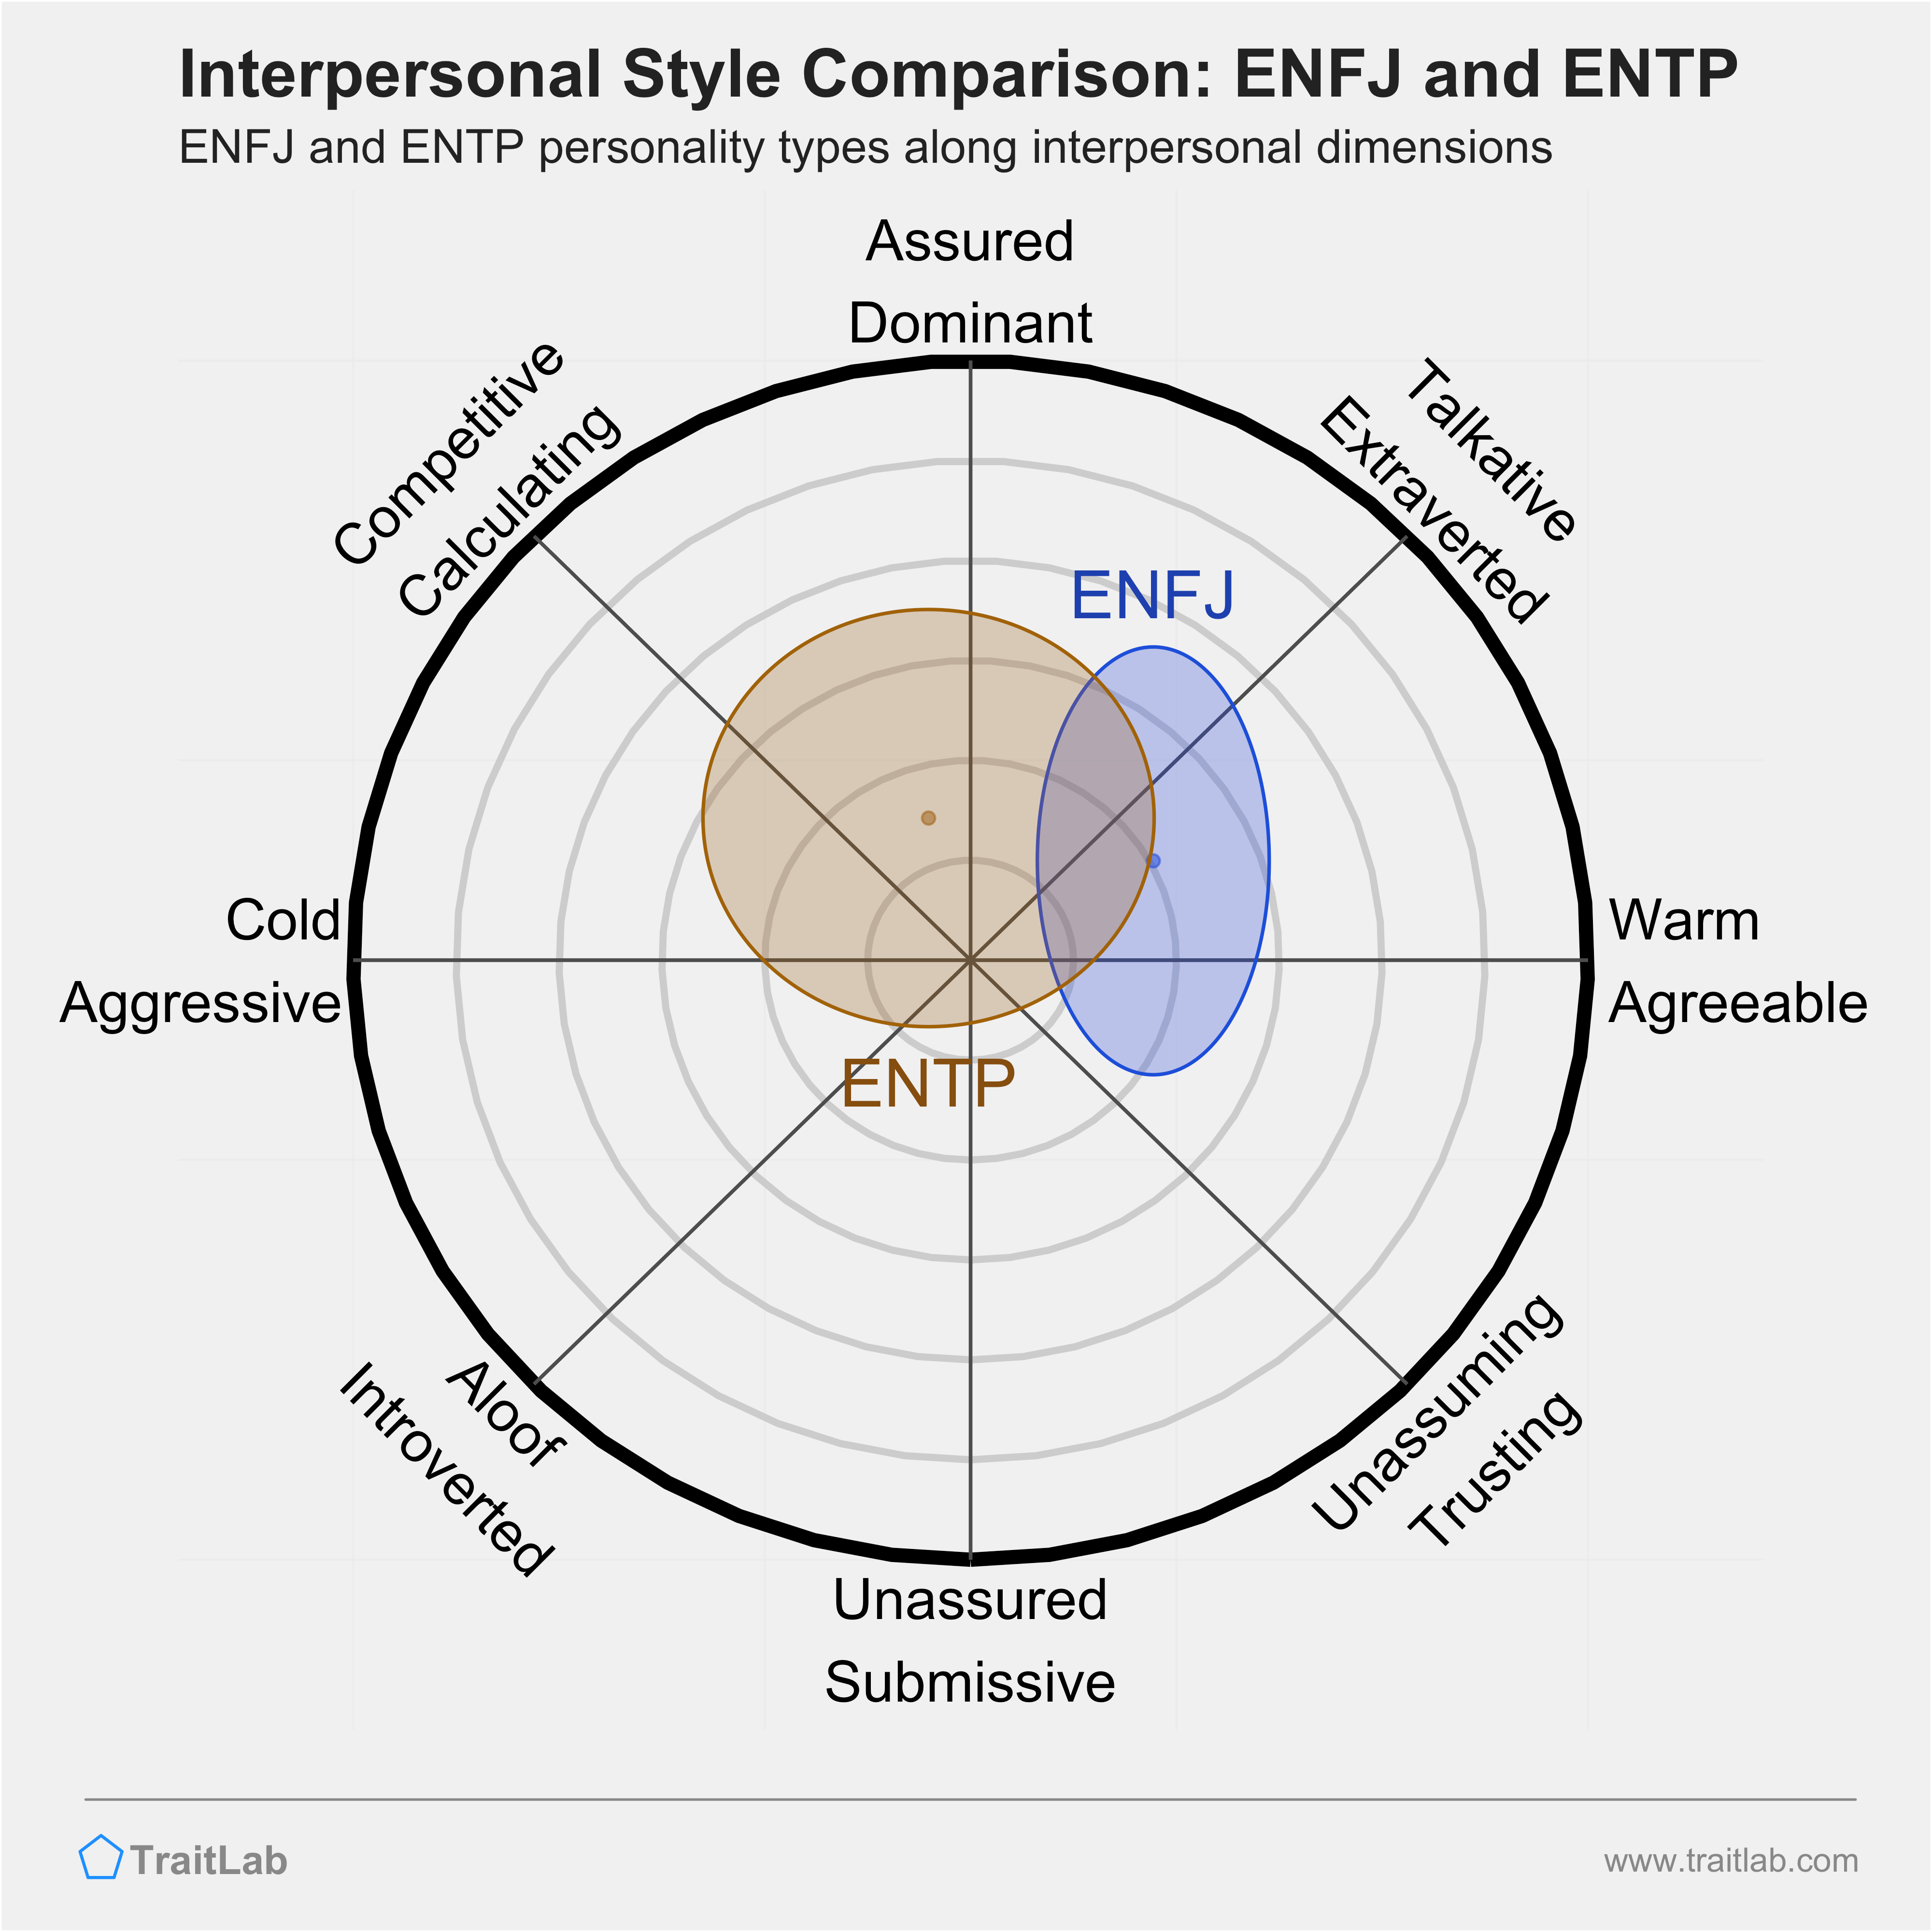 ENFJ and ENTP comparison across interpersonal dimensions